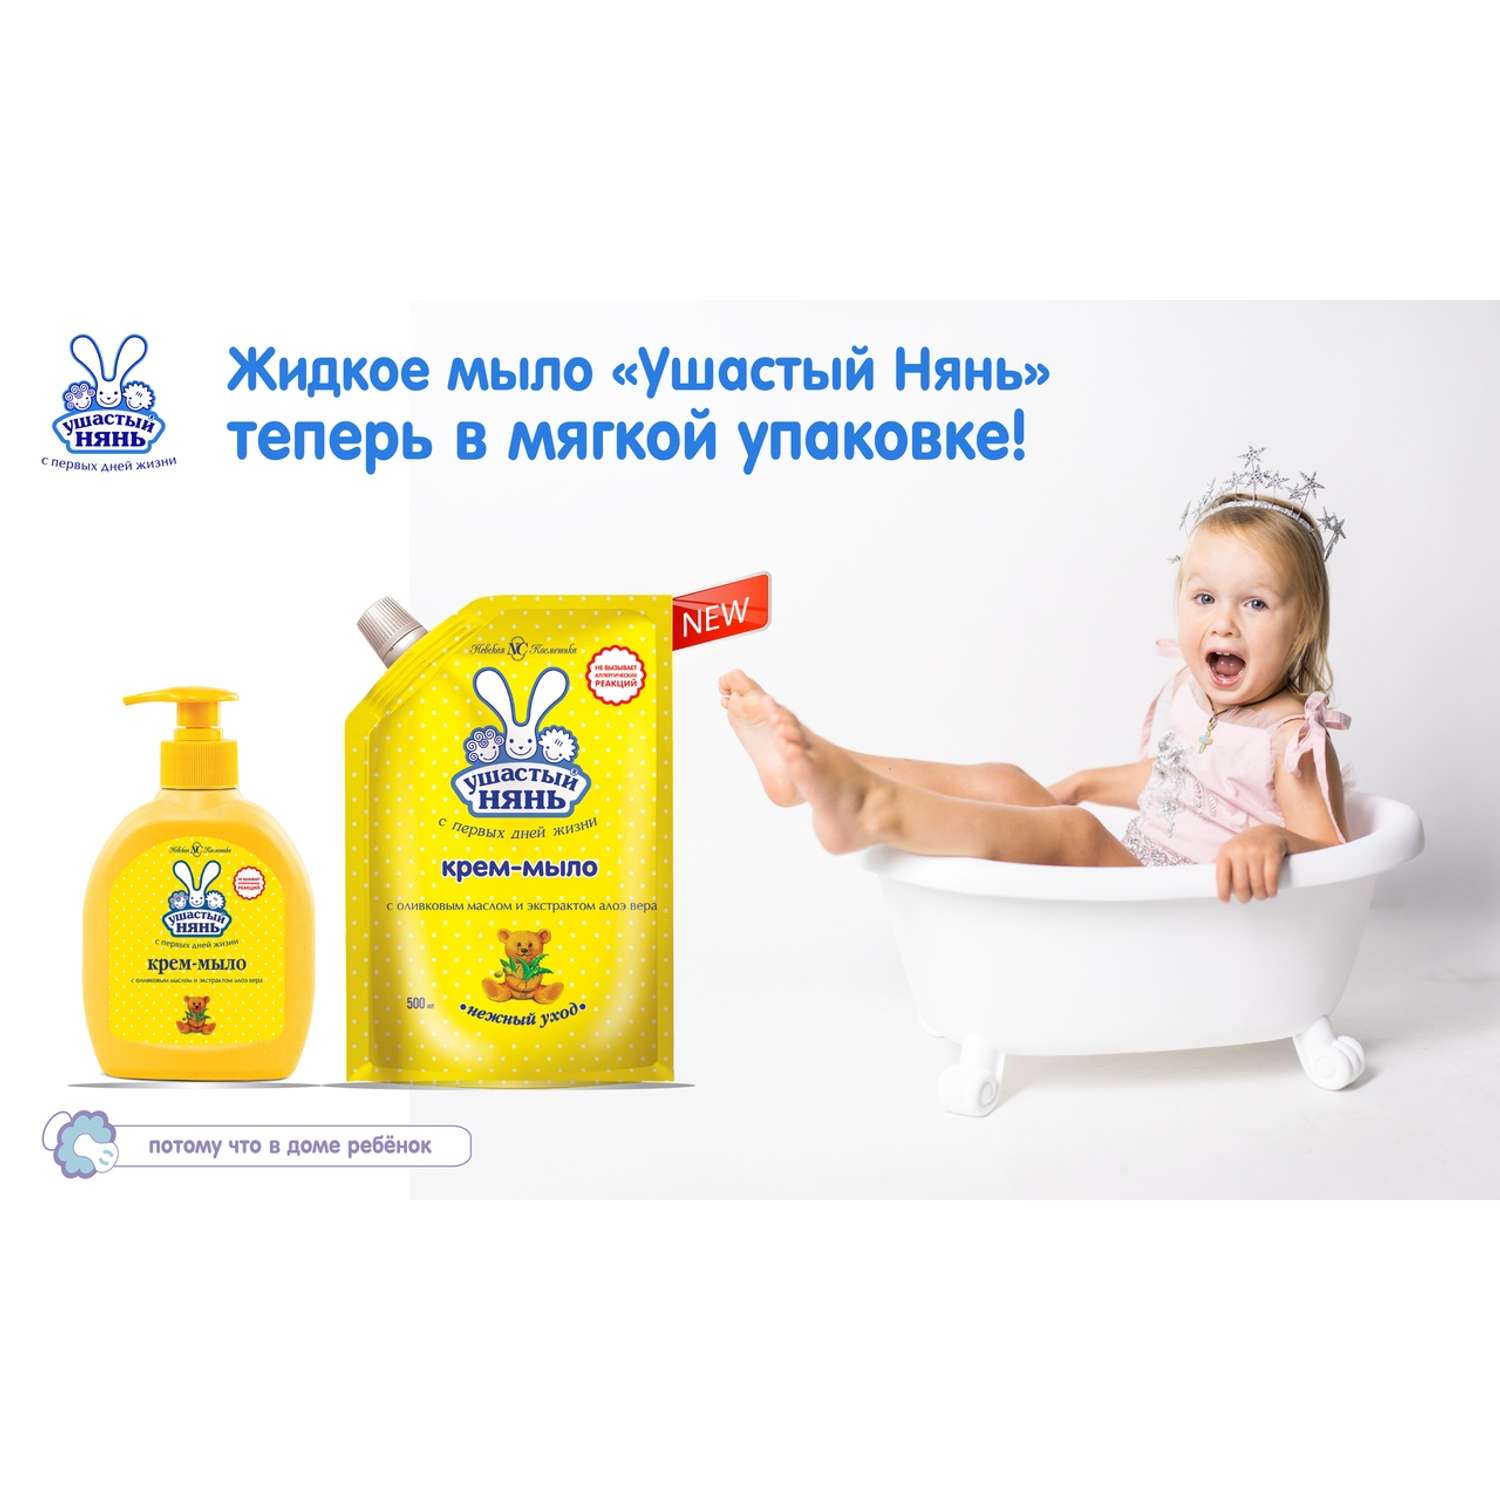 Жидкое мыло Ушастый нянь детское с оливковым маслом и экстрактом алоэ вера 500мл - фото 3